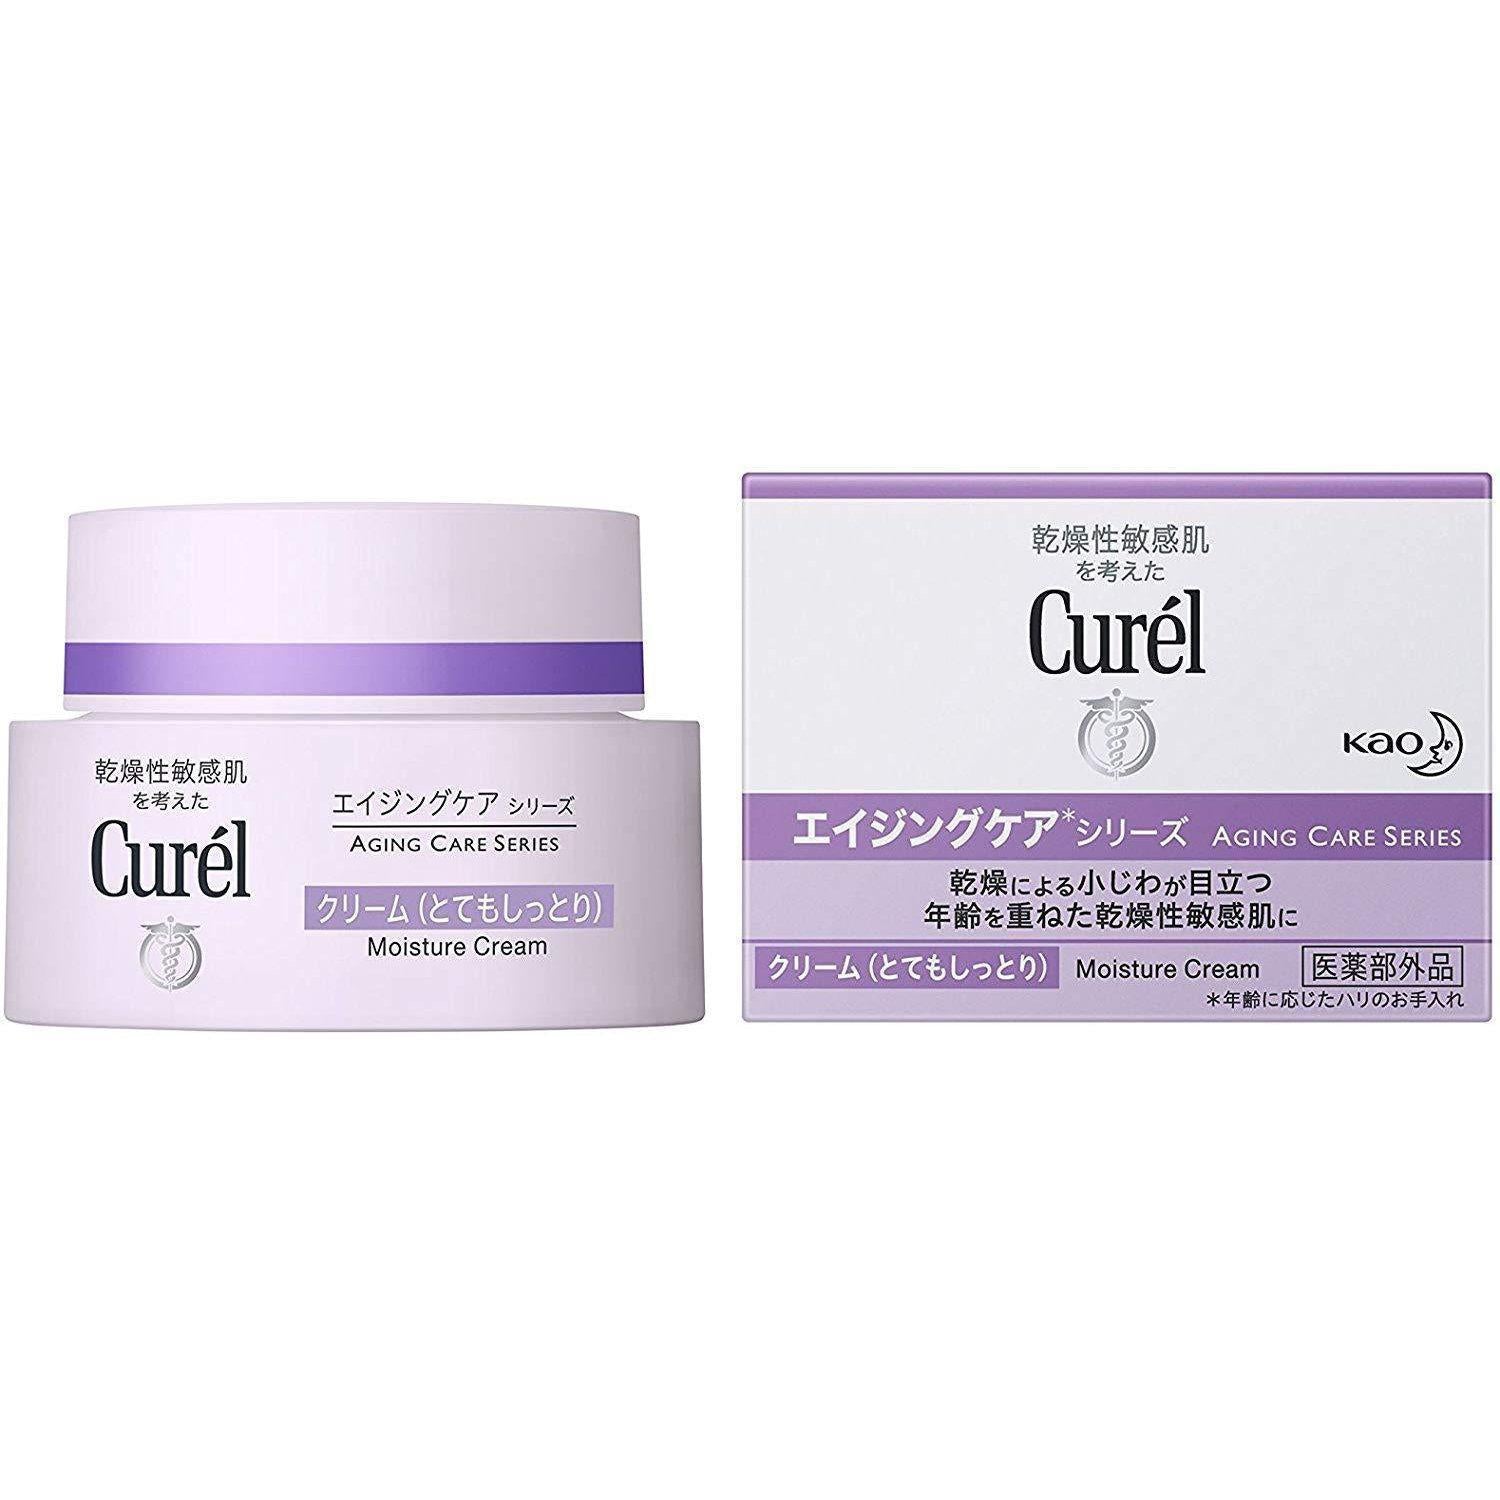 Kao Curel Aging Care Moisture Face Cream 40g